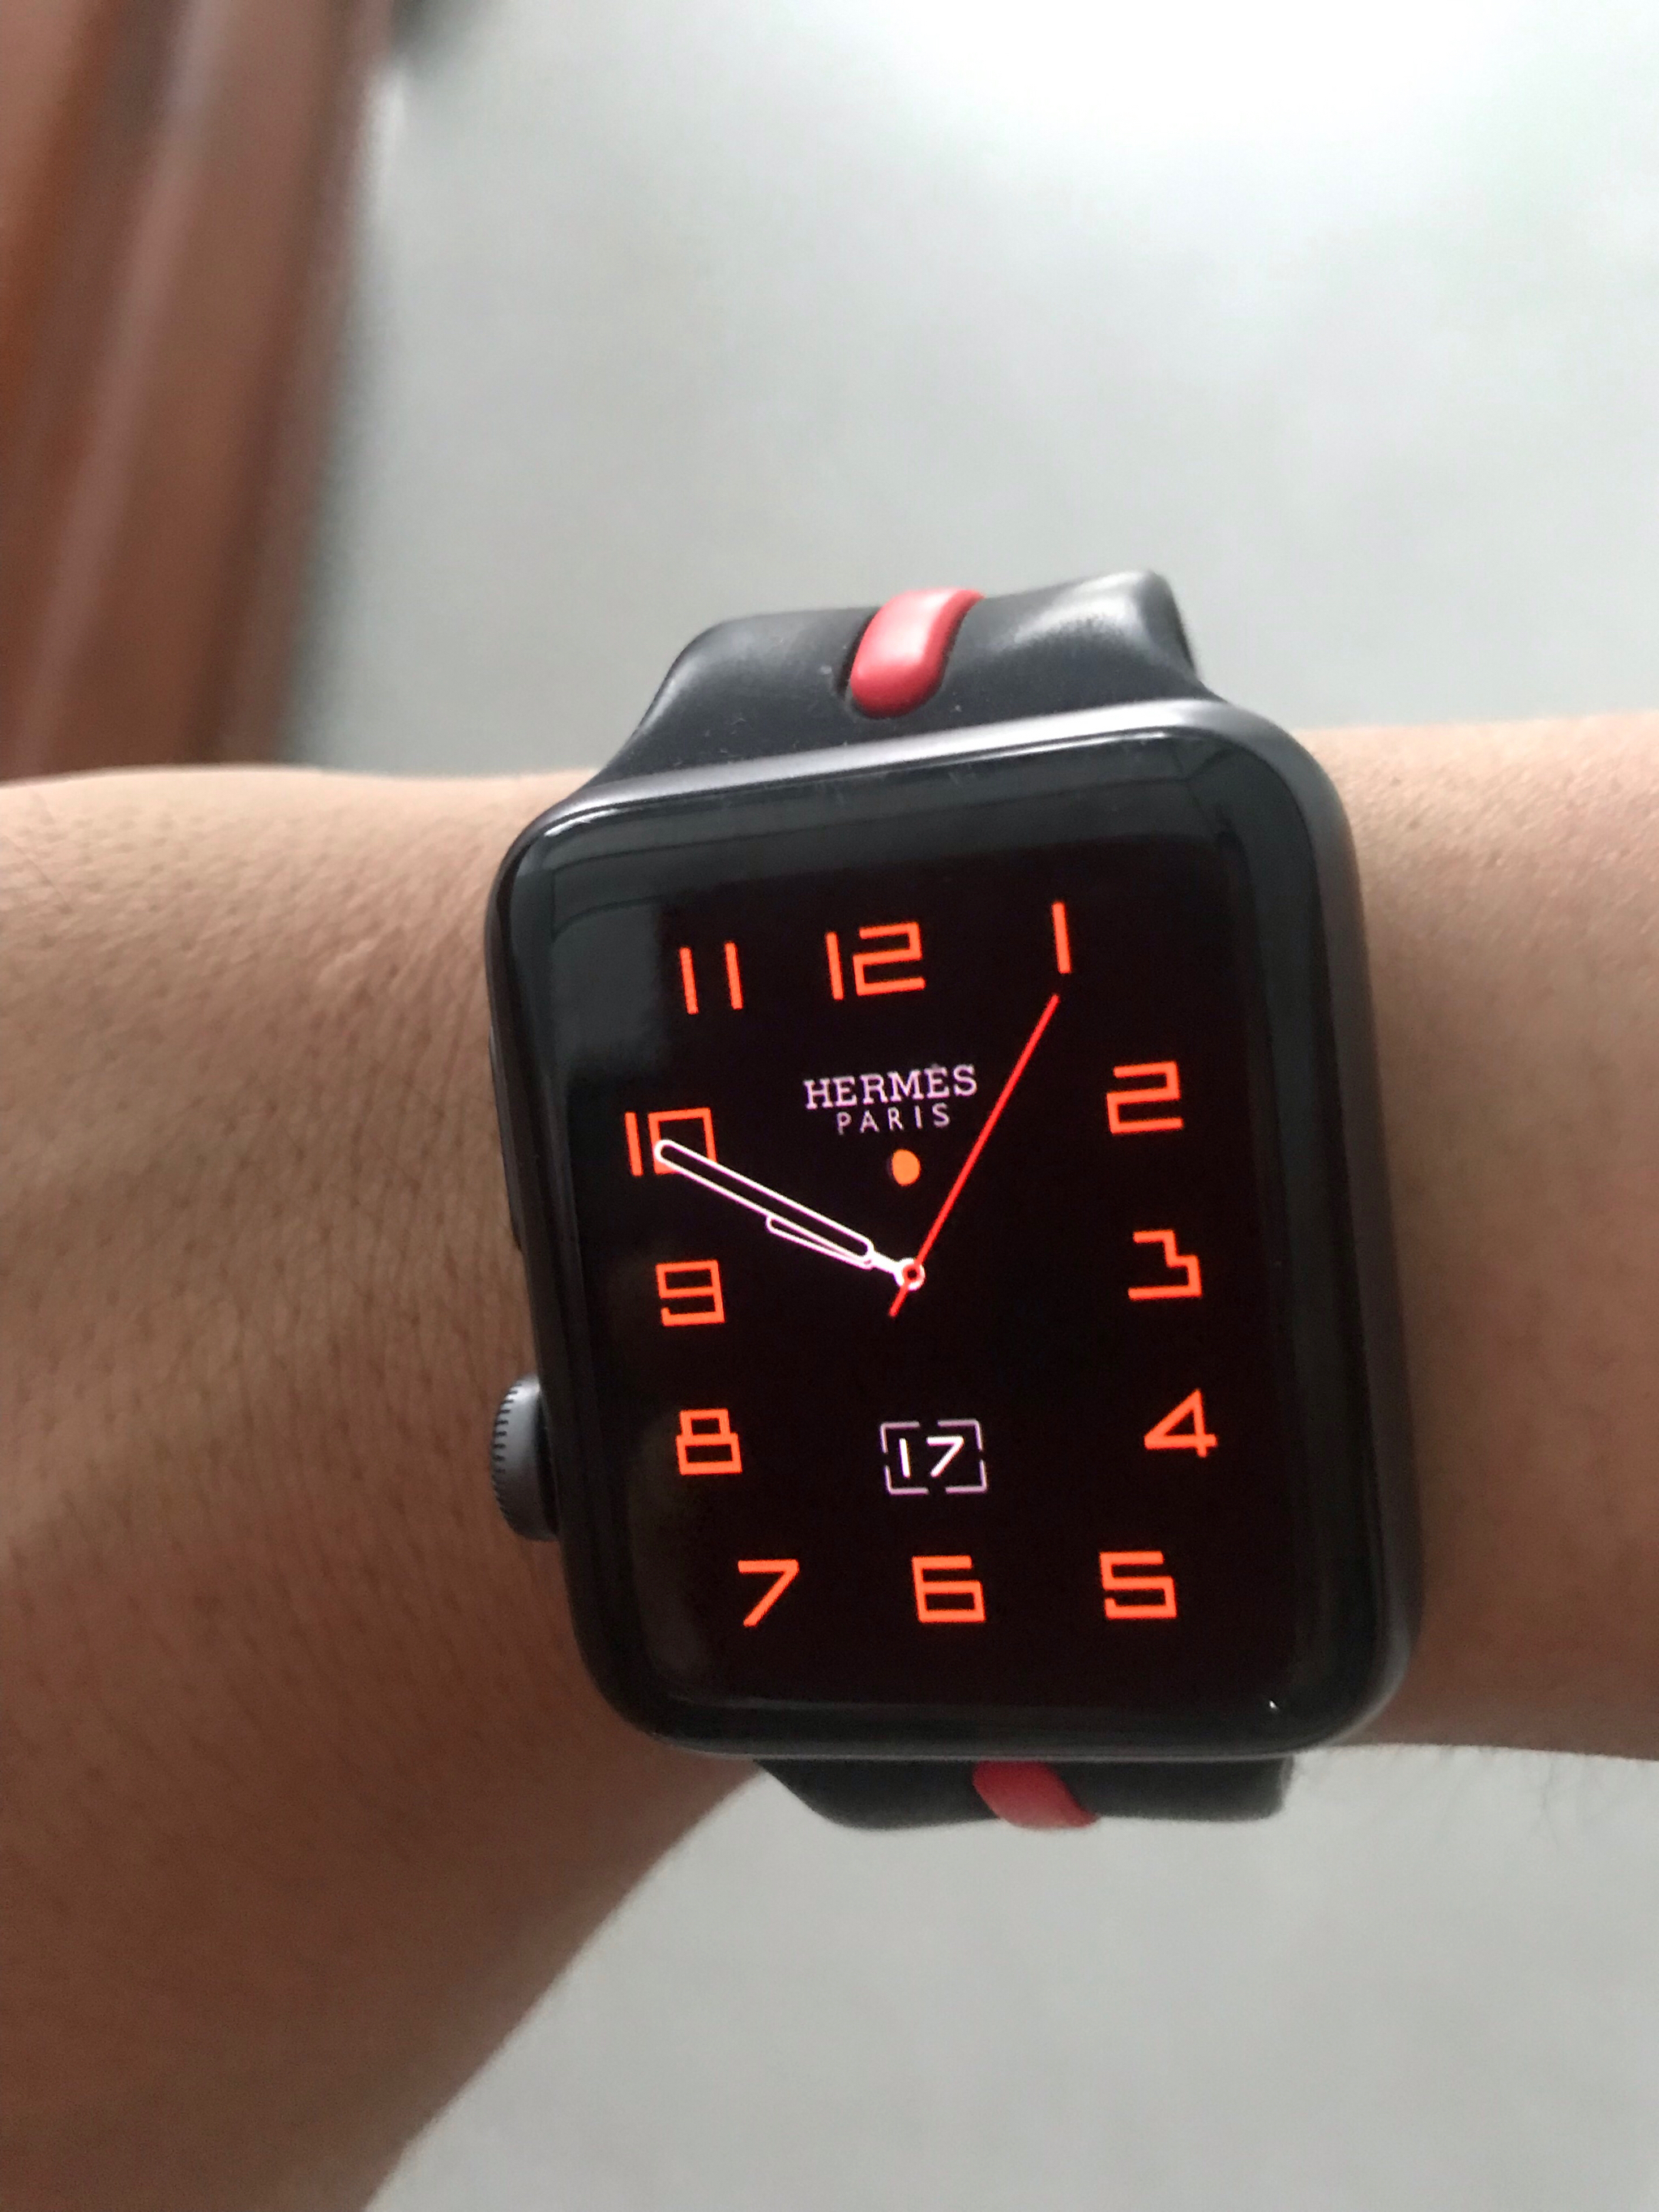 Tips thay đổi ảnh nền mặt đồng hồ Apple Watch Series 3 đơn giản